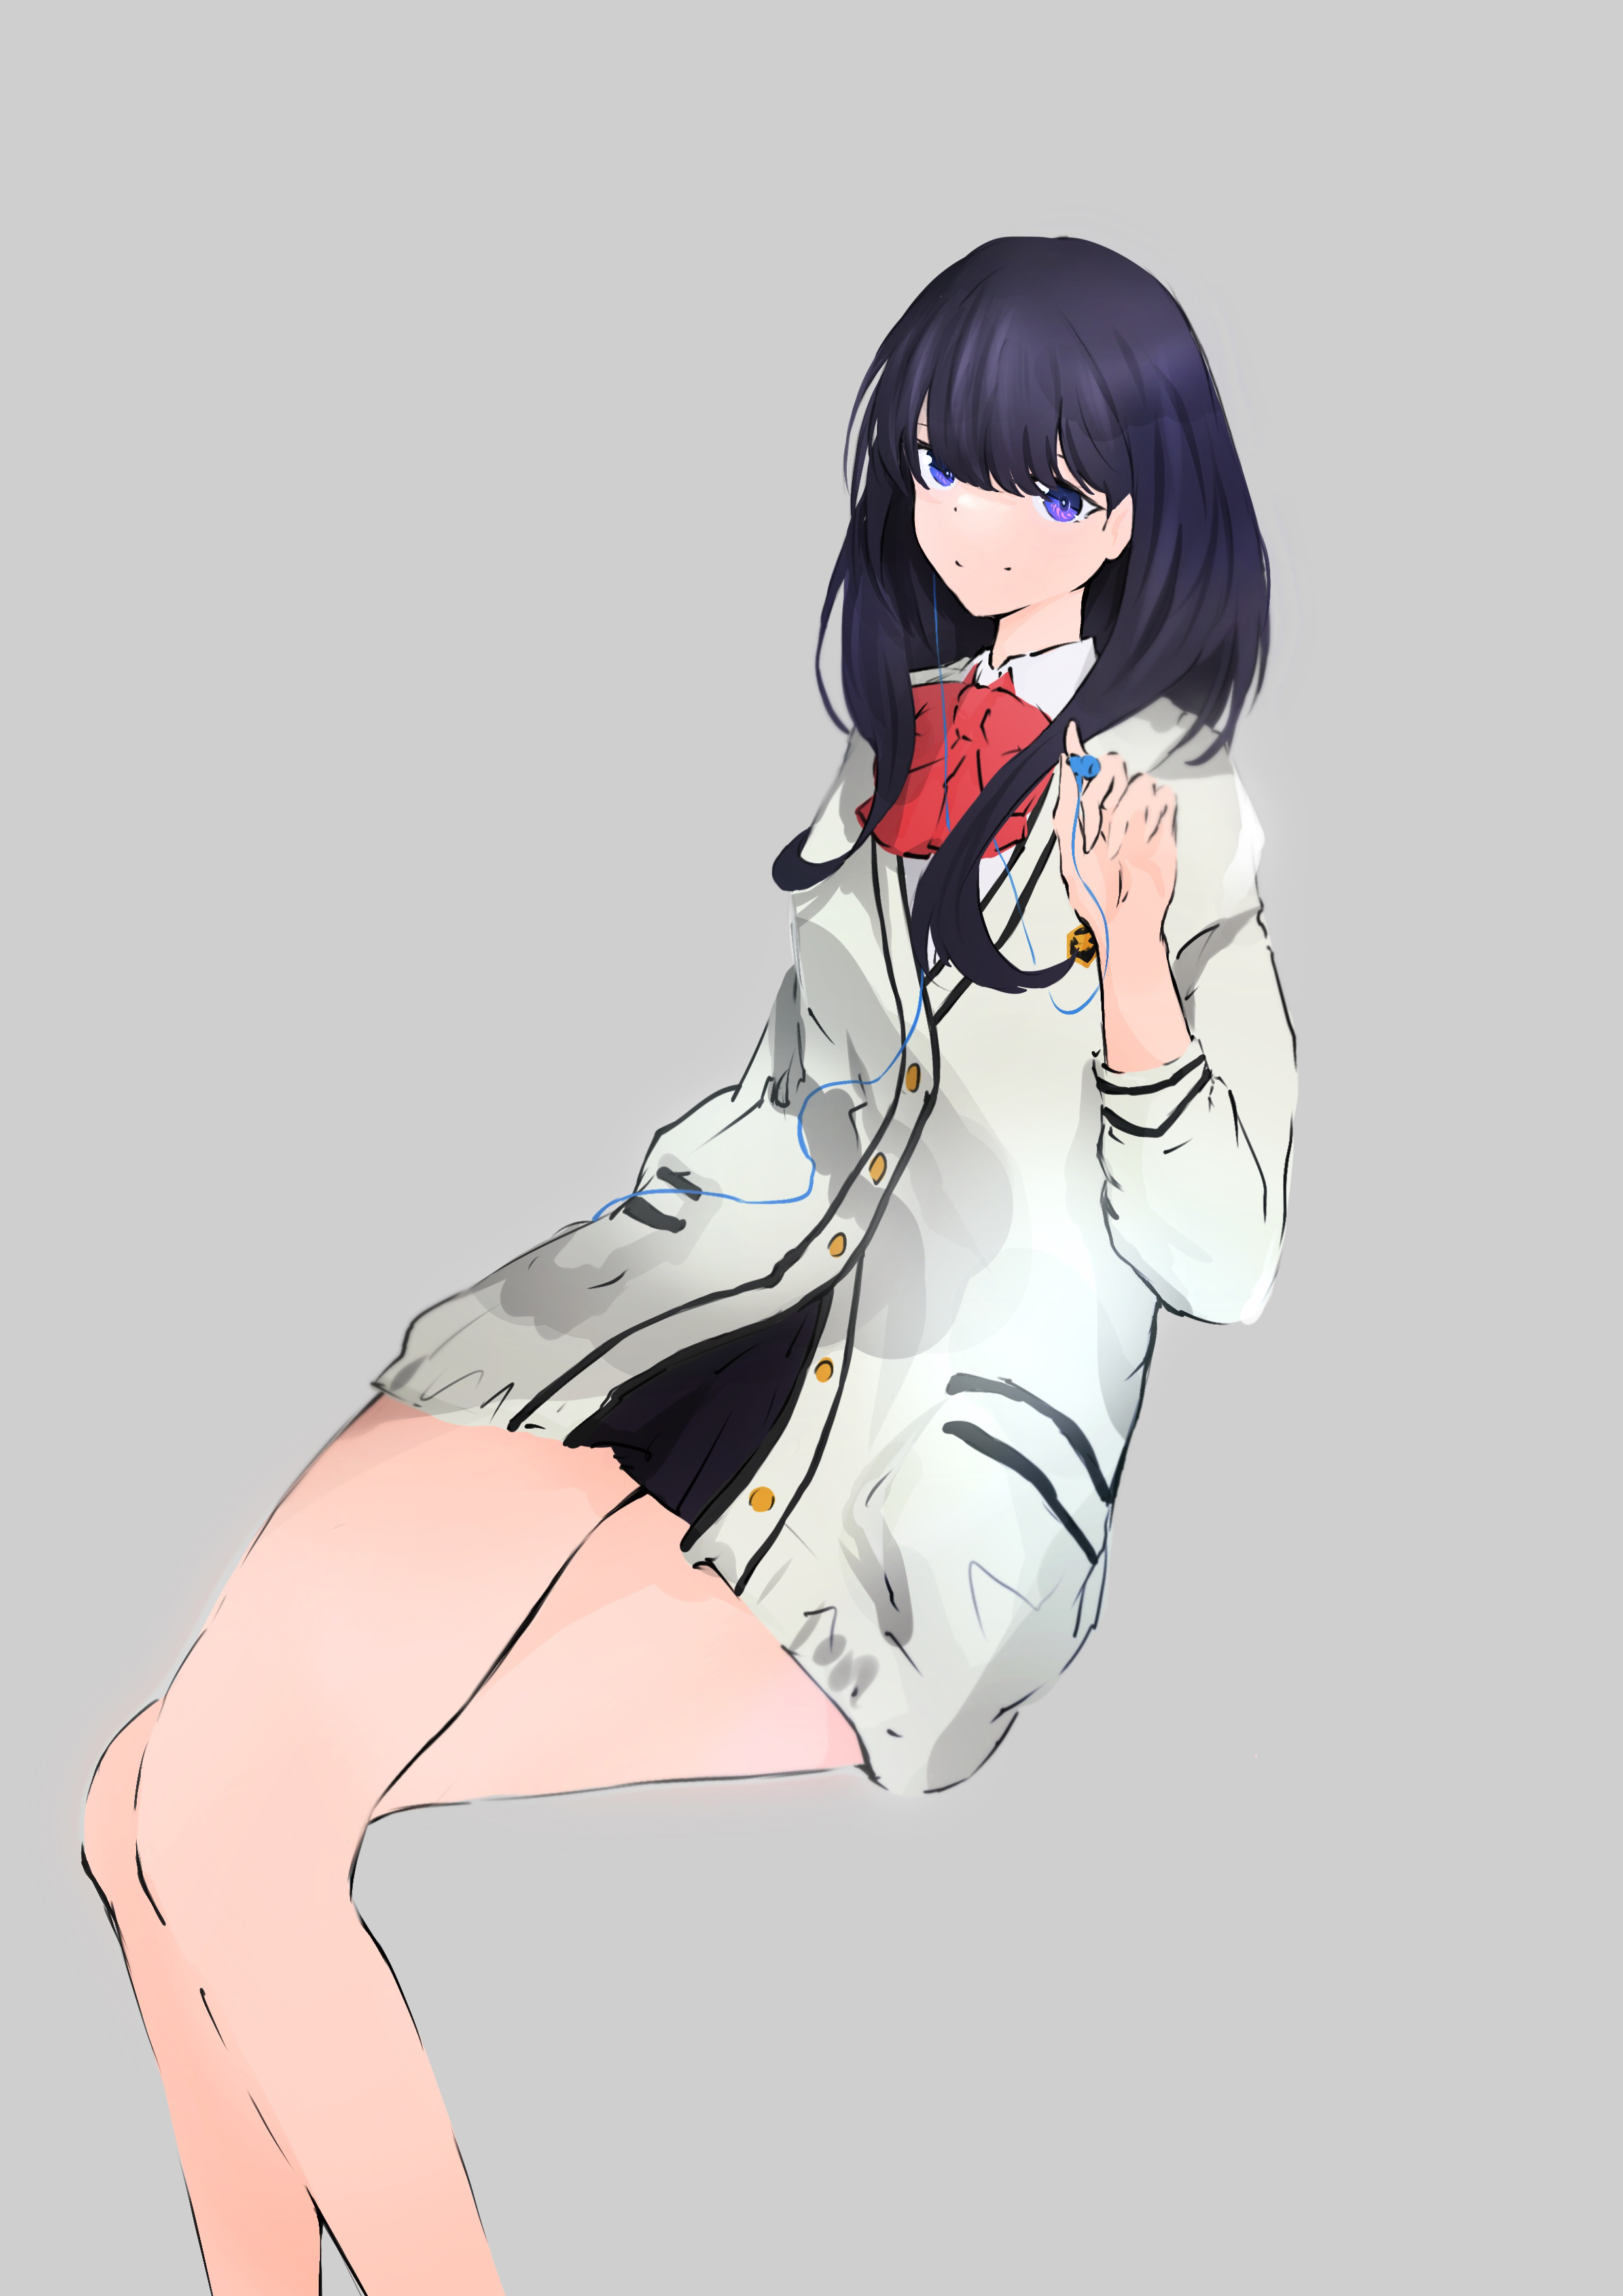 Anime Anime Girls SSSS GRiDMAN Takarada Rikka Long Hair Black Hair Solo Artwork Digital Art Fan Art  2480x3508